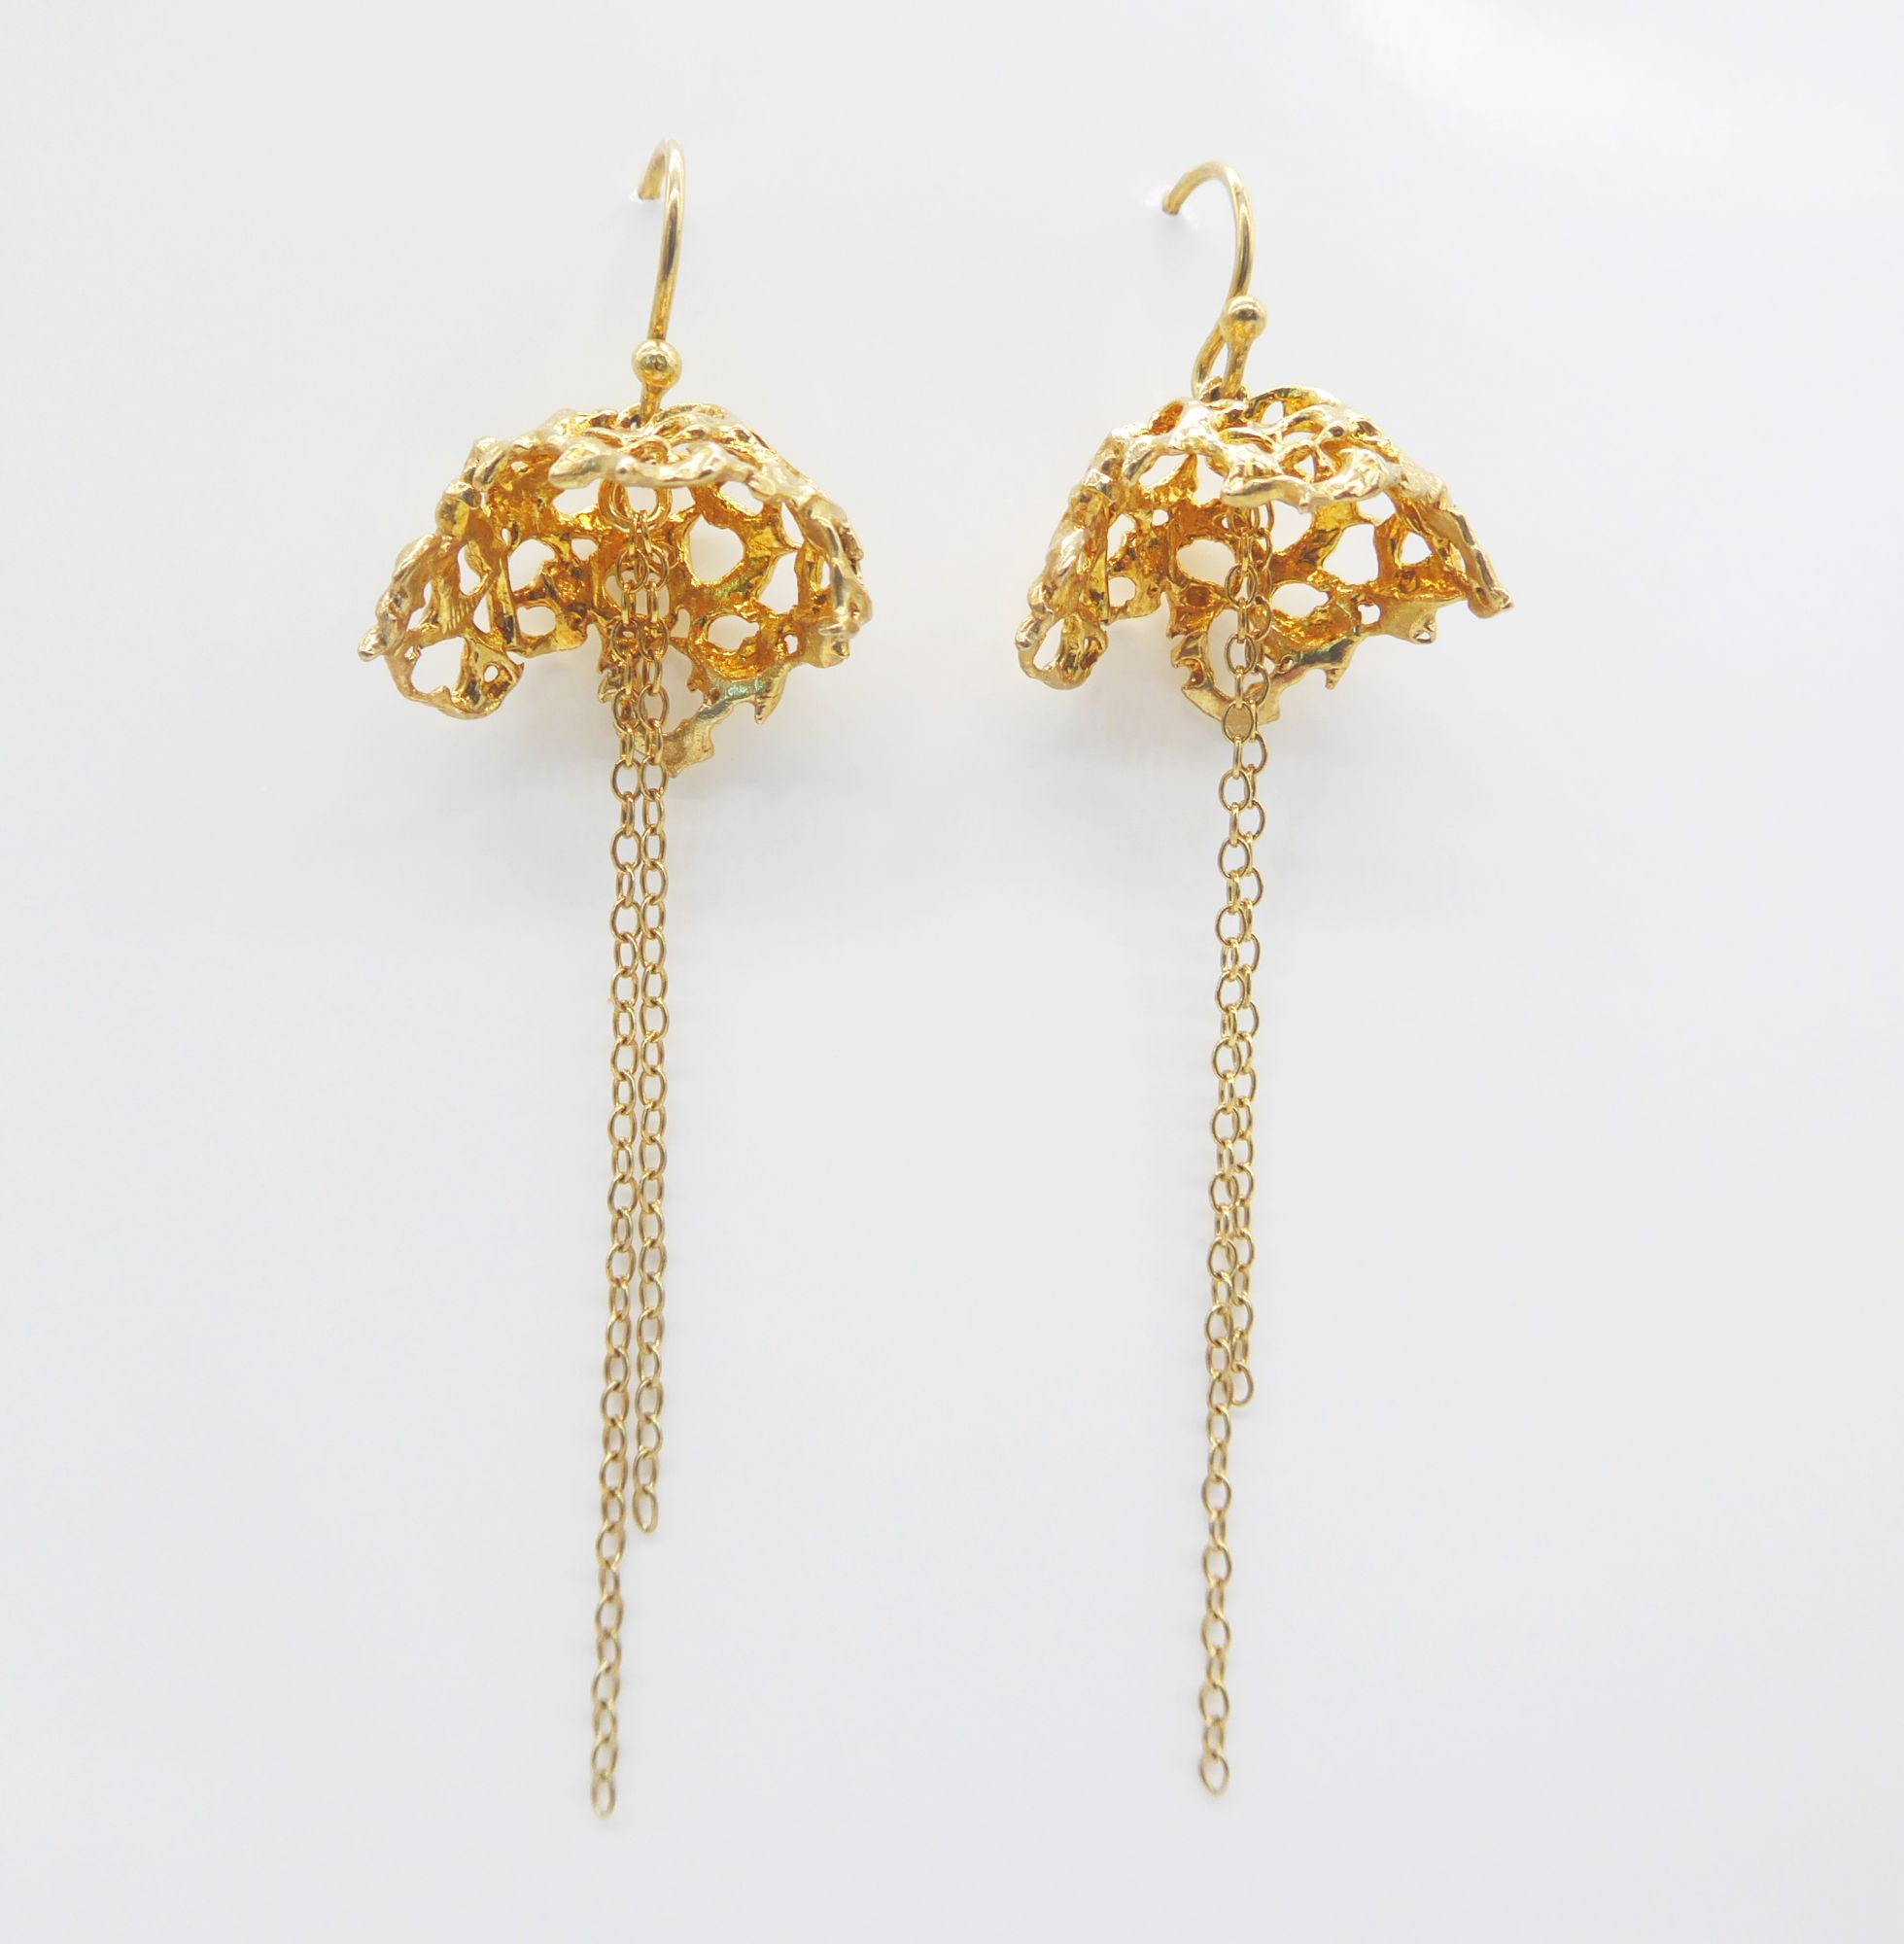 Unusual gold web earrings